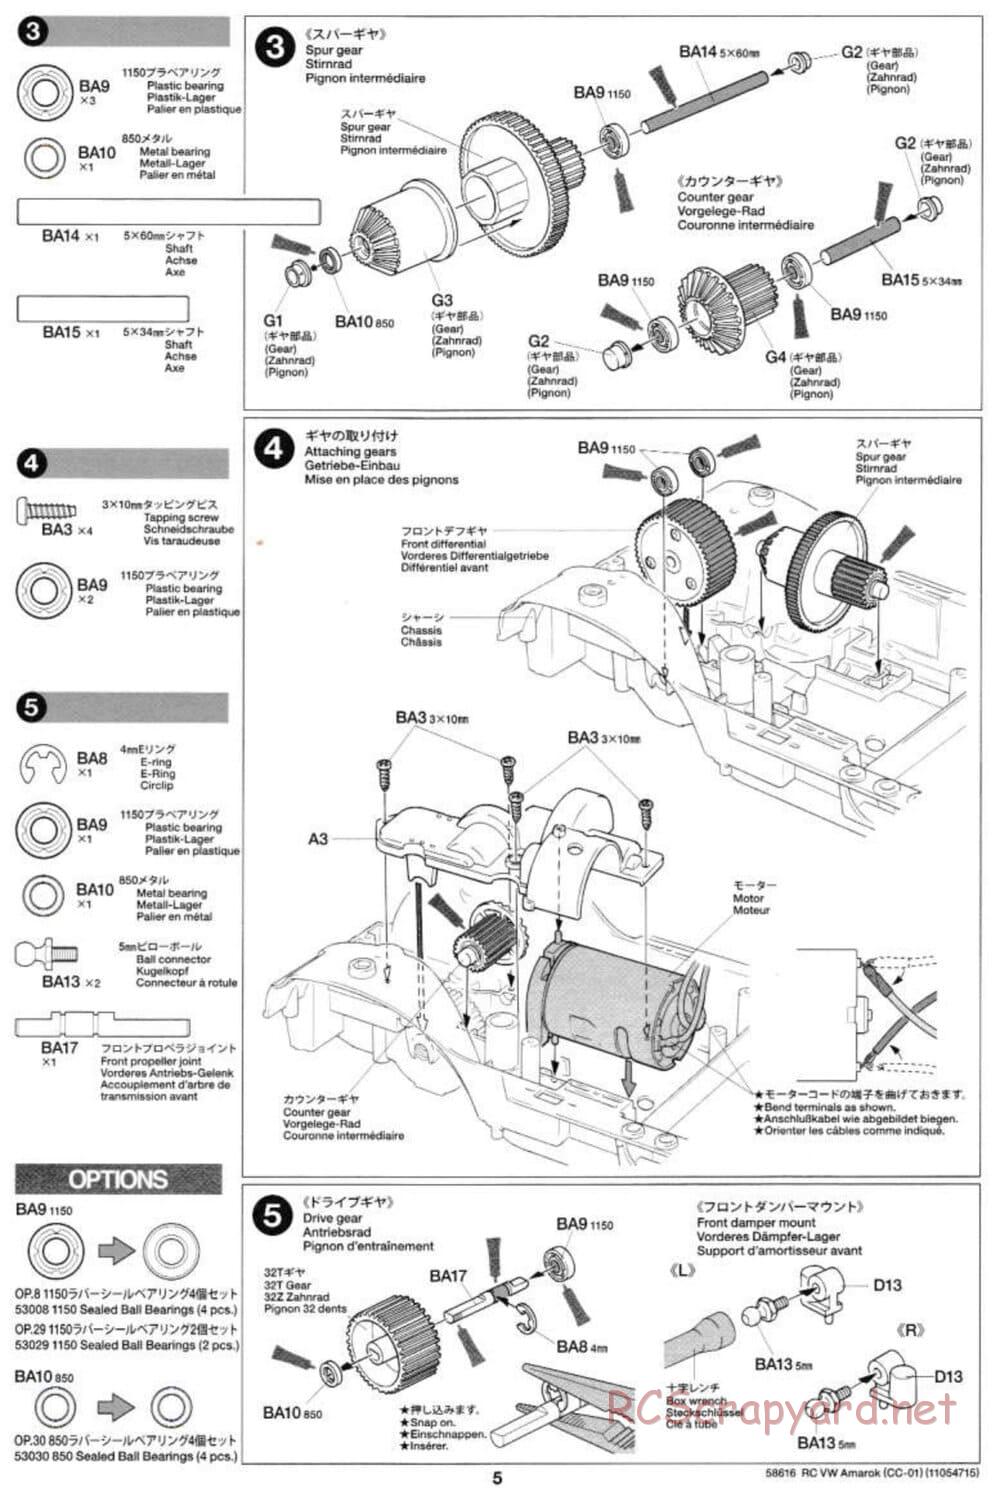 Tamiya - Volkswagen Amarok - CC-01 Chassis - Manual - Page 5